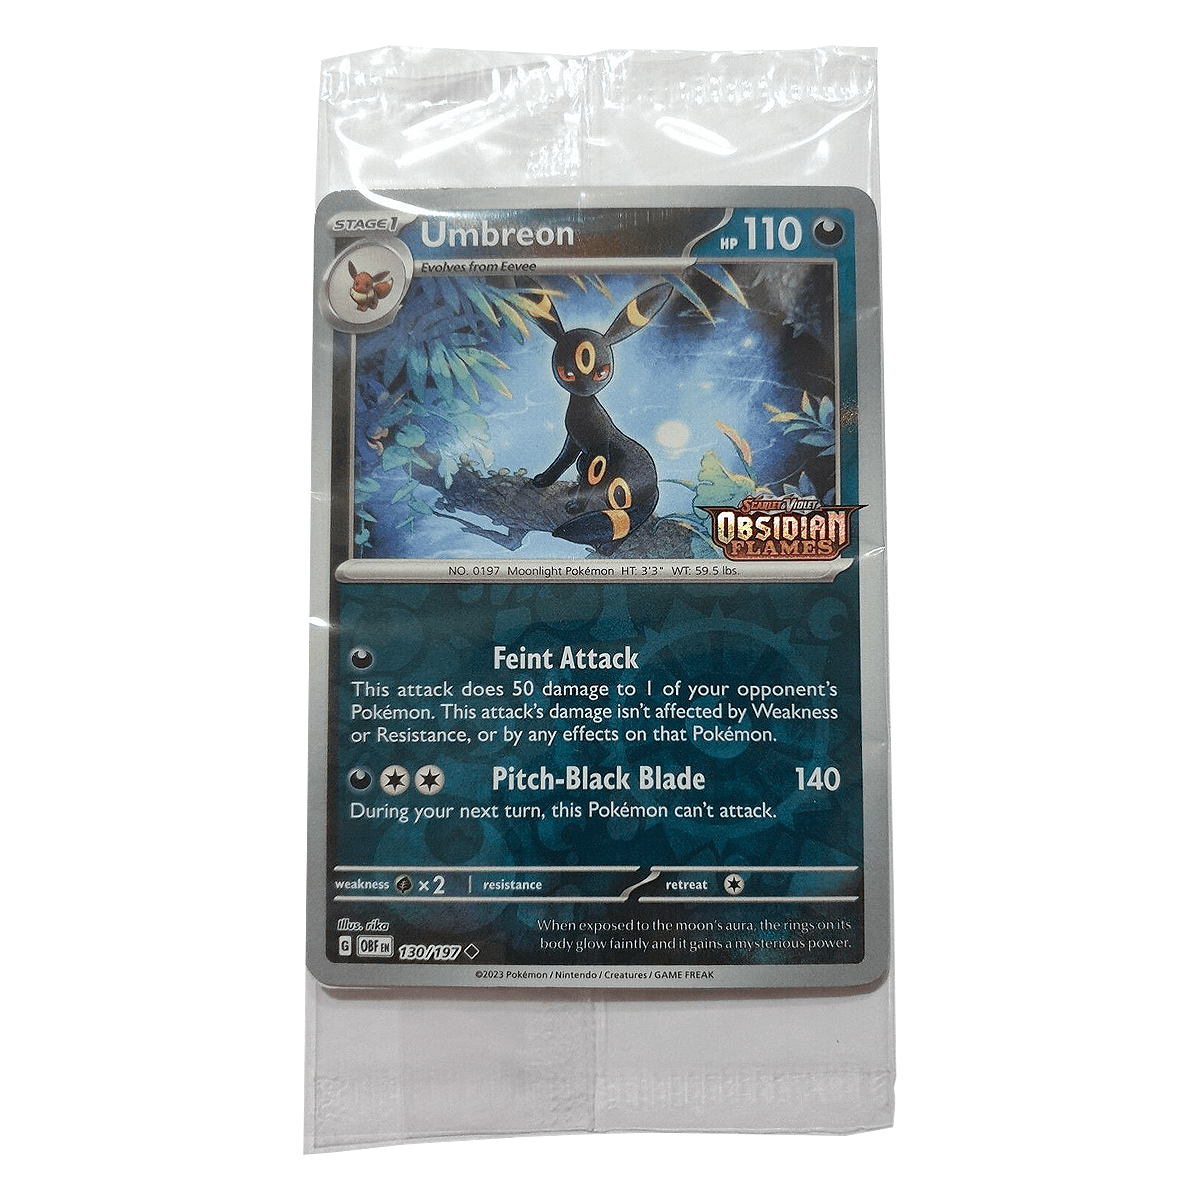 Pokémon Umbreon 130/197 - Obsidian Flames Stamp Promo - Sealed